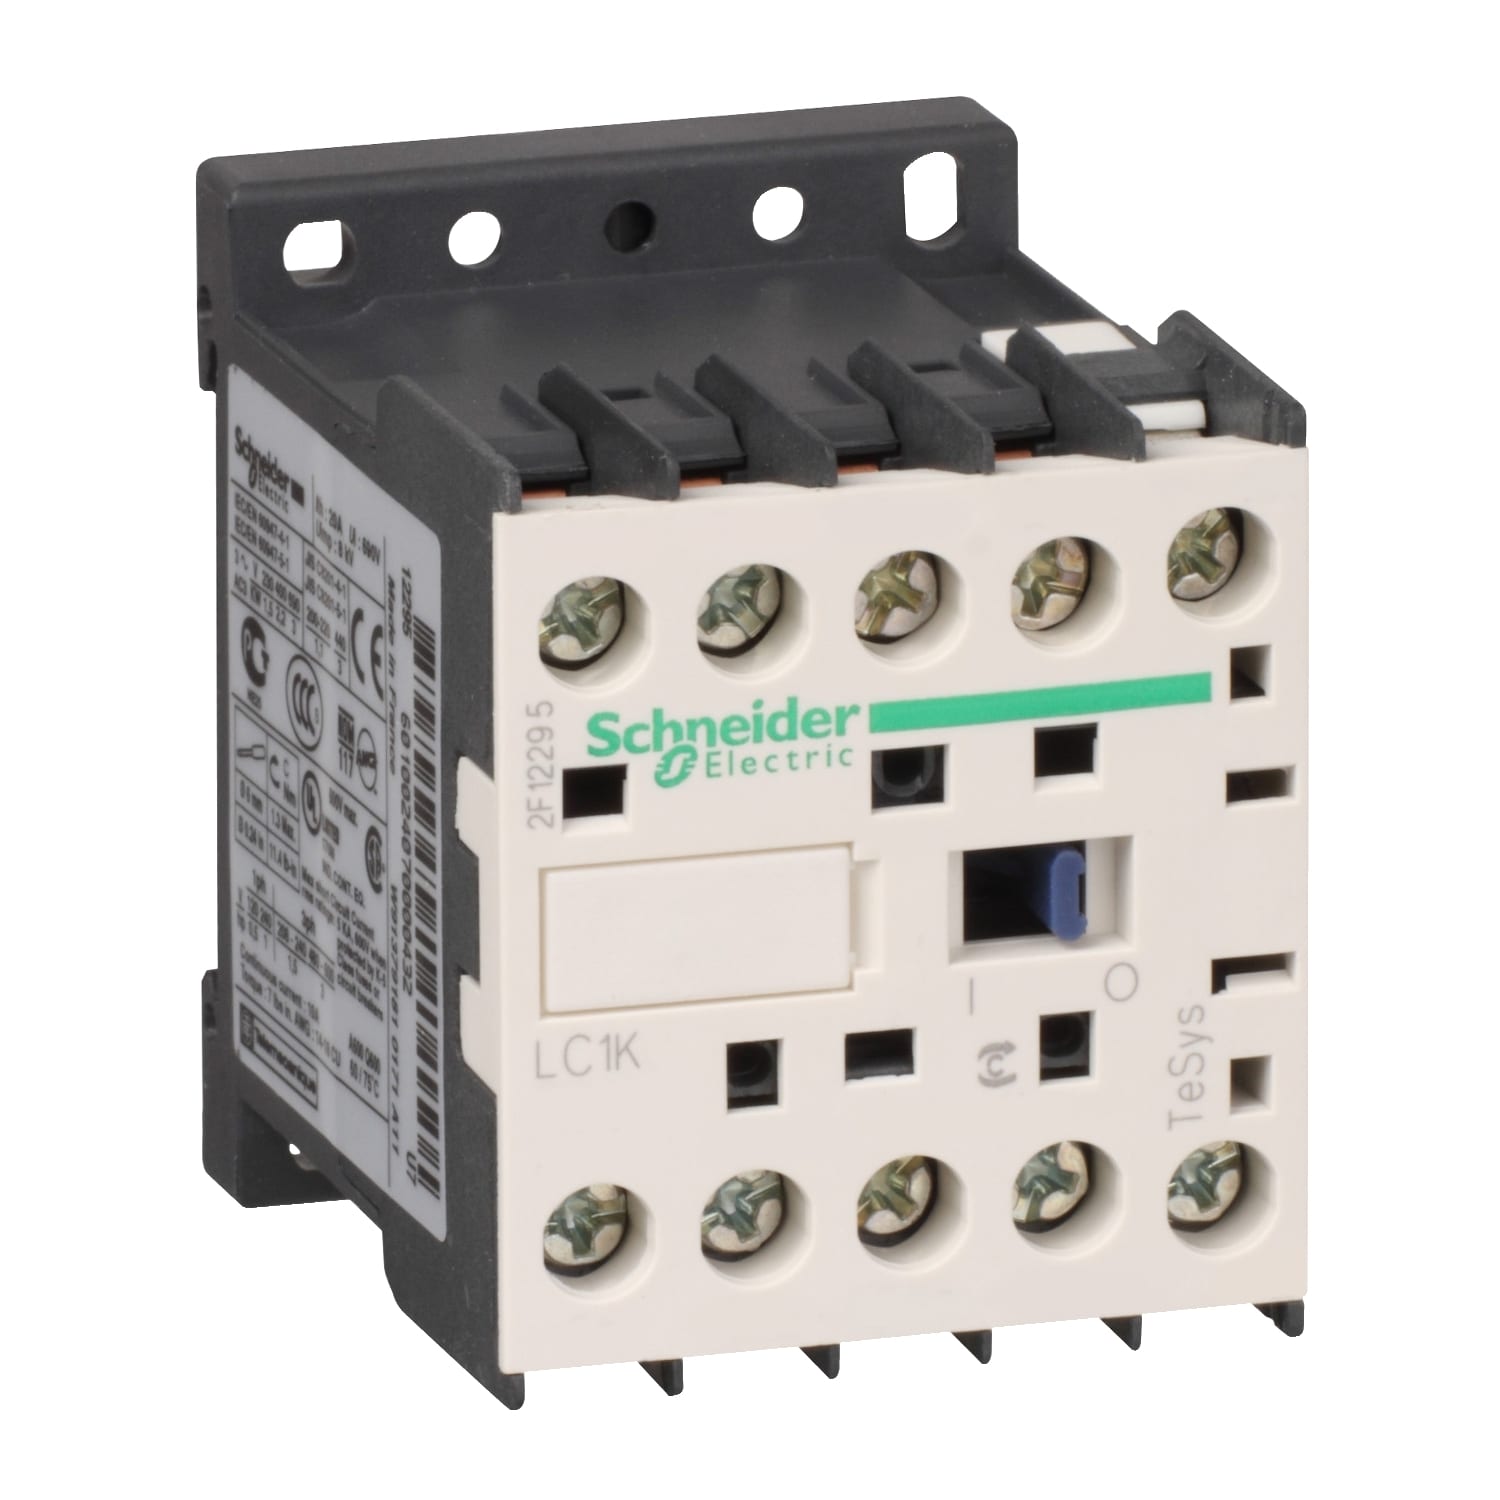 Schneider Electric - TeSys LC1K - contacteur - 4P (2F+2O) - AC-1 440V - 20A - bobine 24Vca